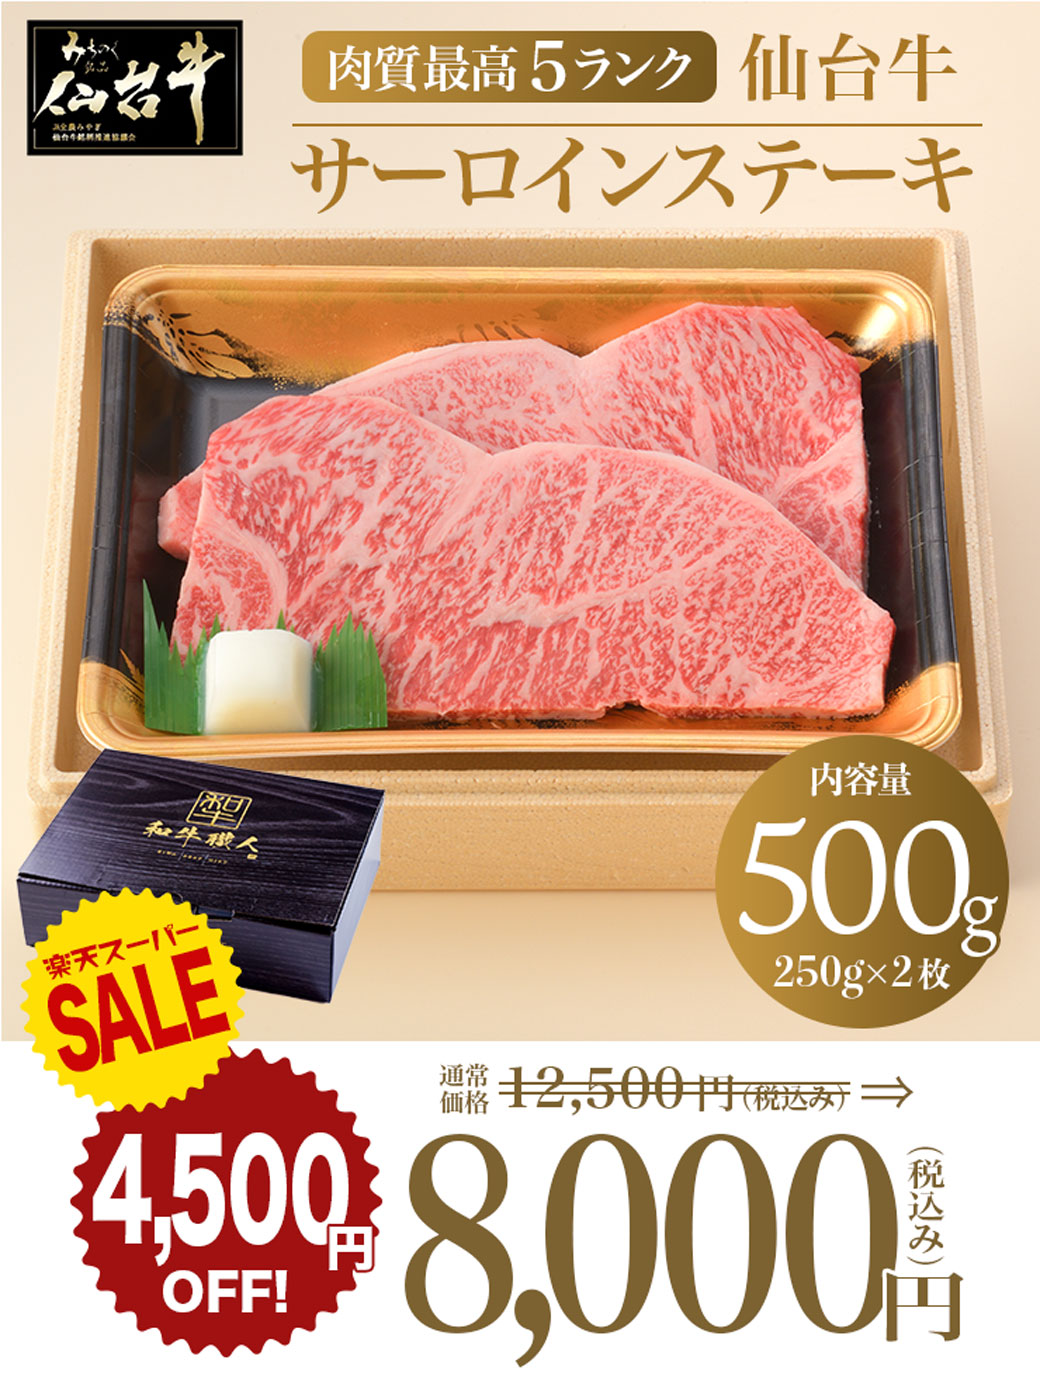 仙台牛サーロインステーキ 500g(250g×2枚)